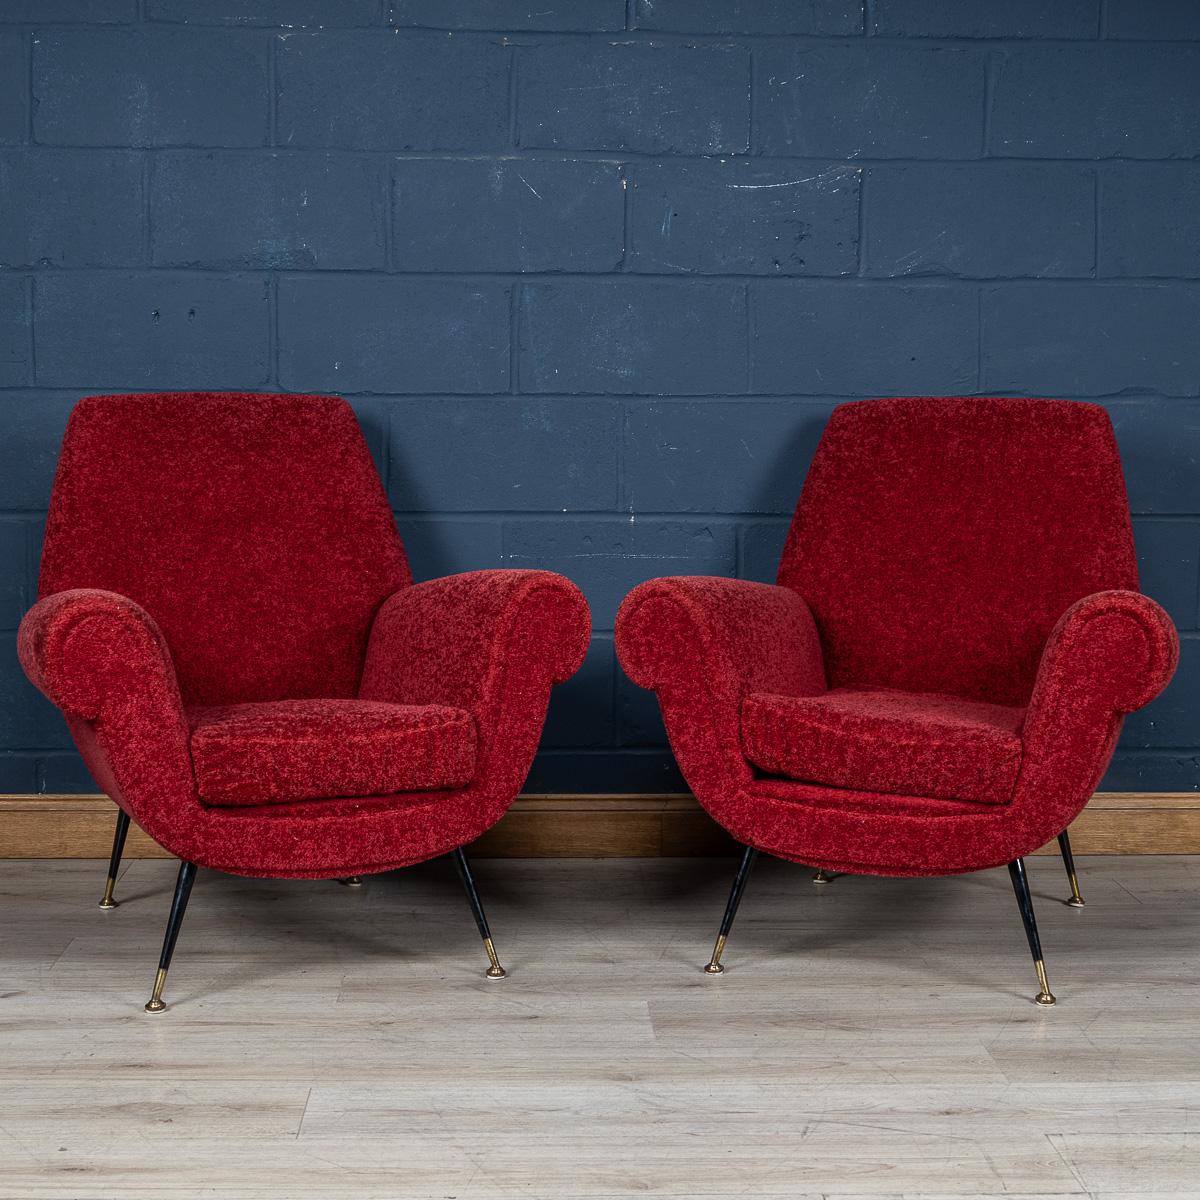 Ein schönes Paar Sessel aus Italien aus der Mitte des 20. Jahrhunderts. Die Sessel sind mit einem luxuriösen karminroten Boucle